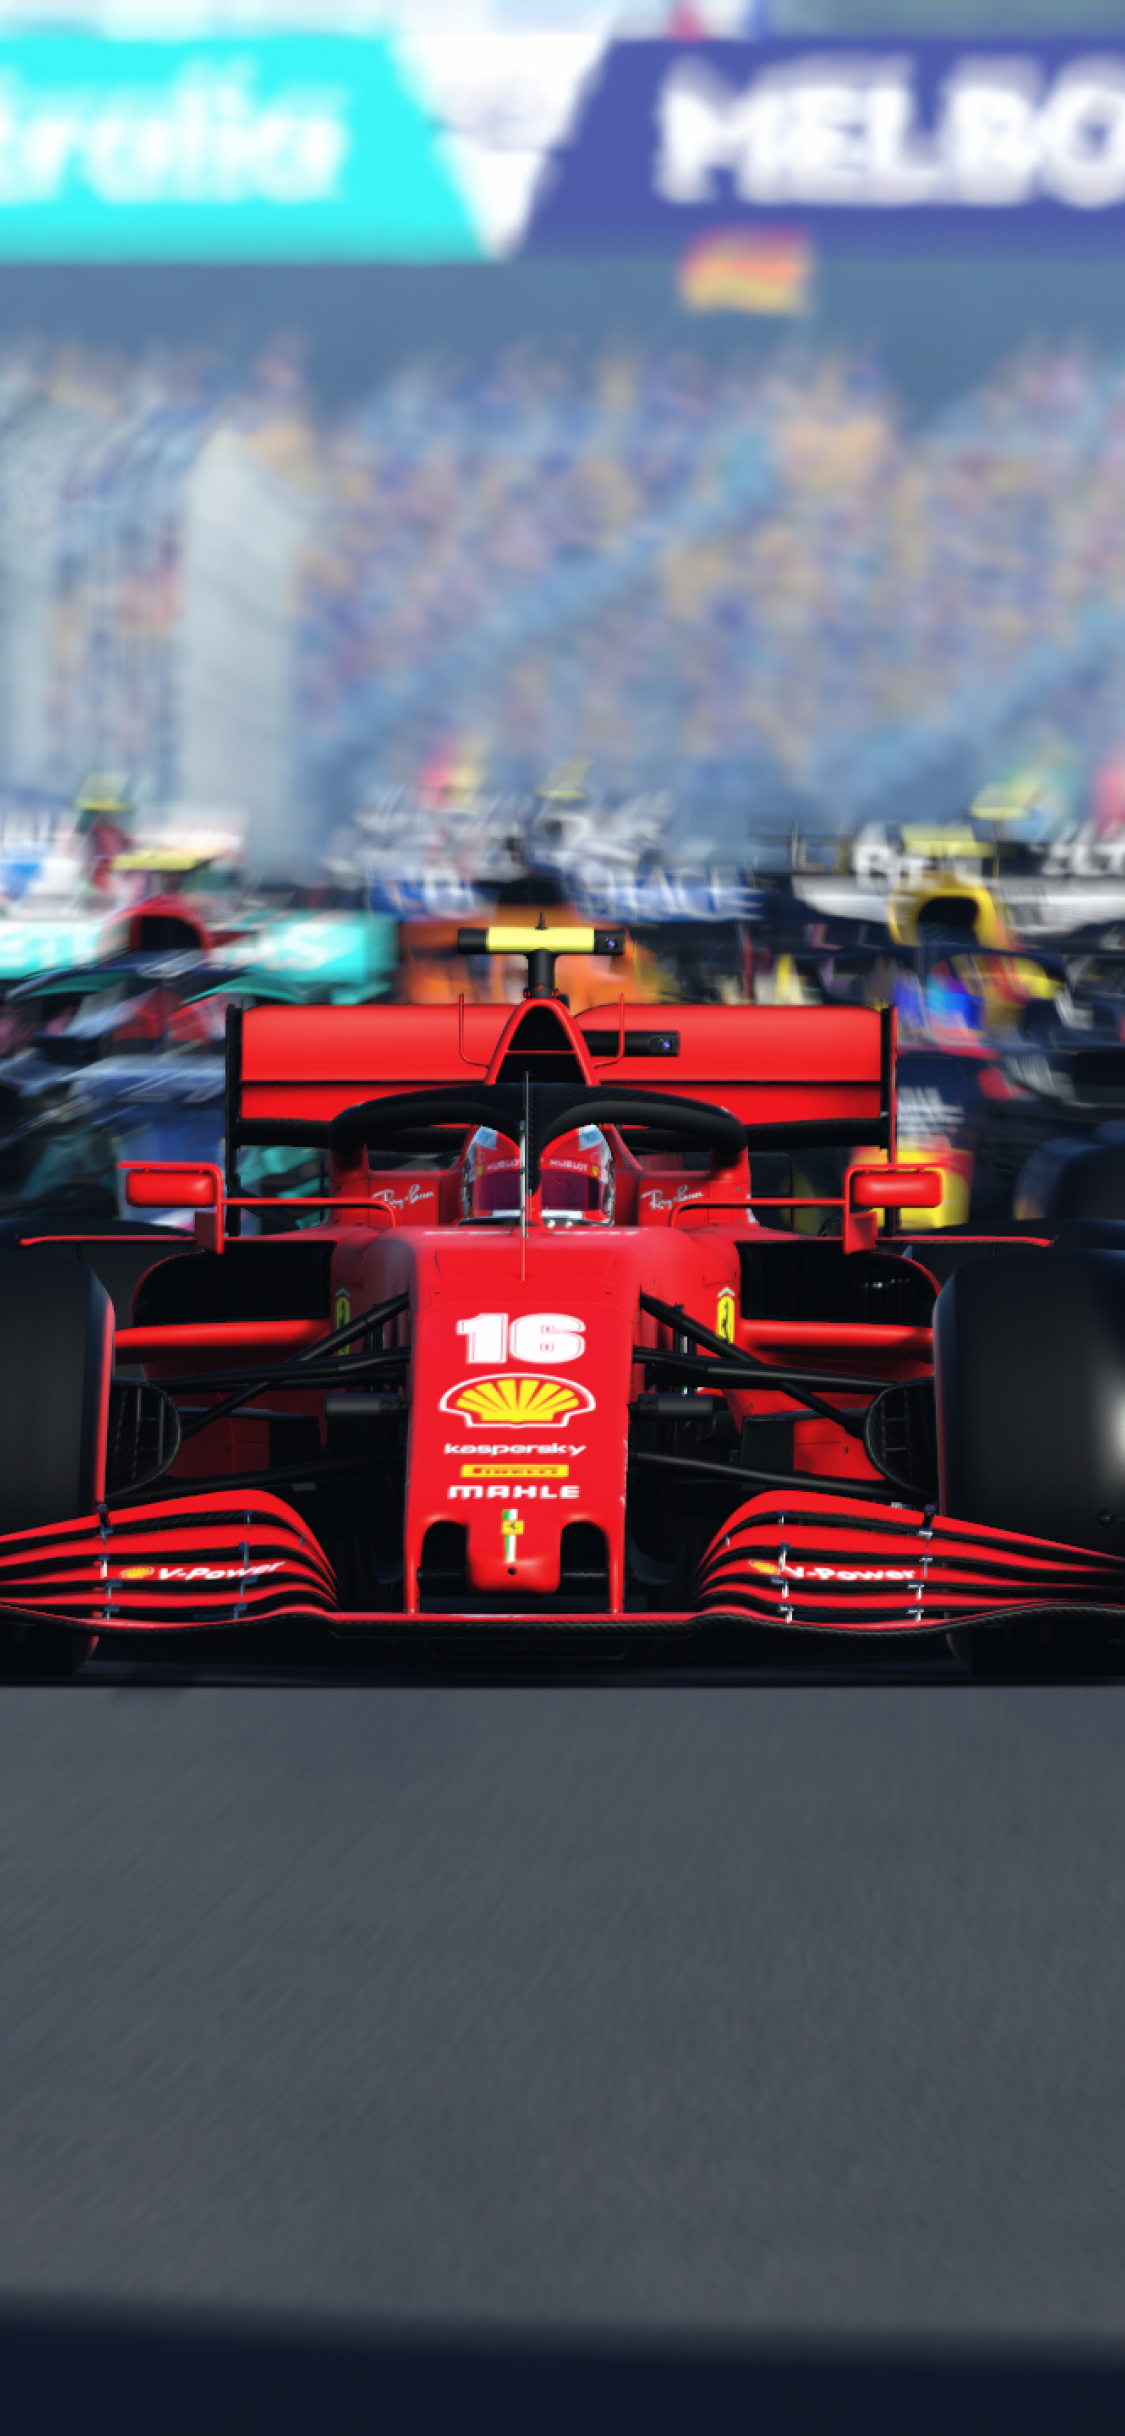 30 Ferrari Formula 1 iPhone Wallpapers  WallpaperSafari